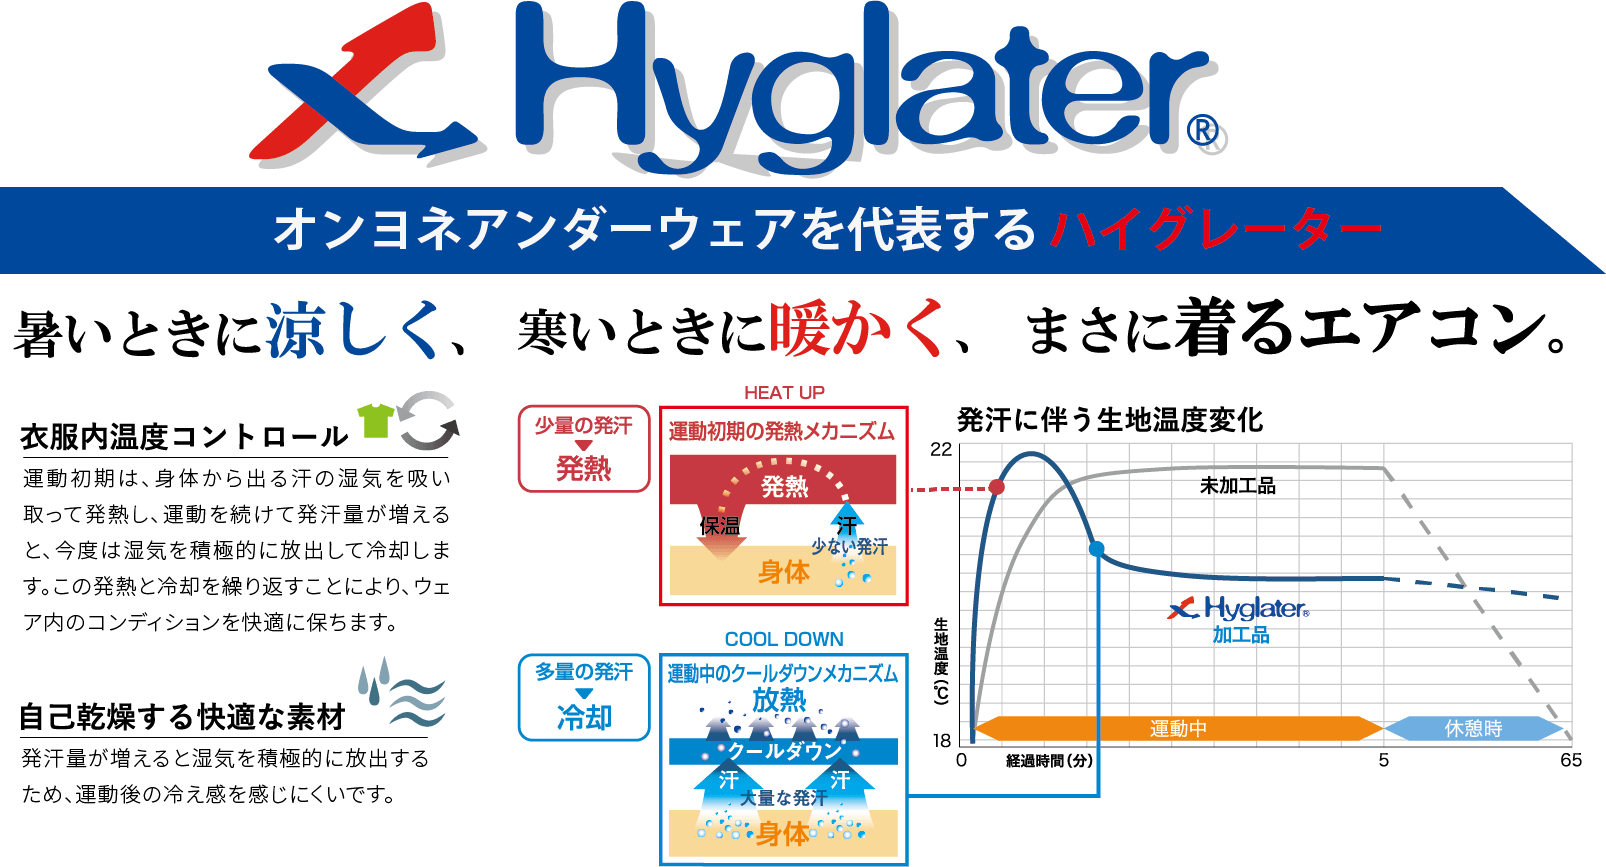 Hyglater。オンヨネアンダーウェアを代表するハイグレーター。暑いときに涼しく、寒いときに暖かく、まさに着るエアコン